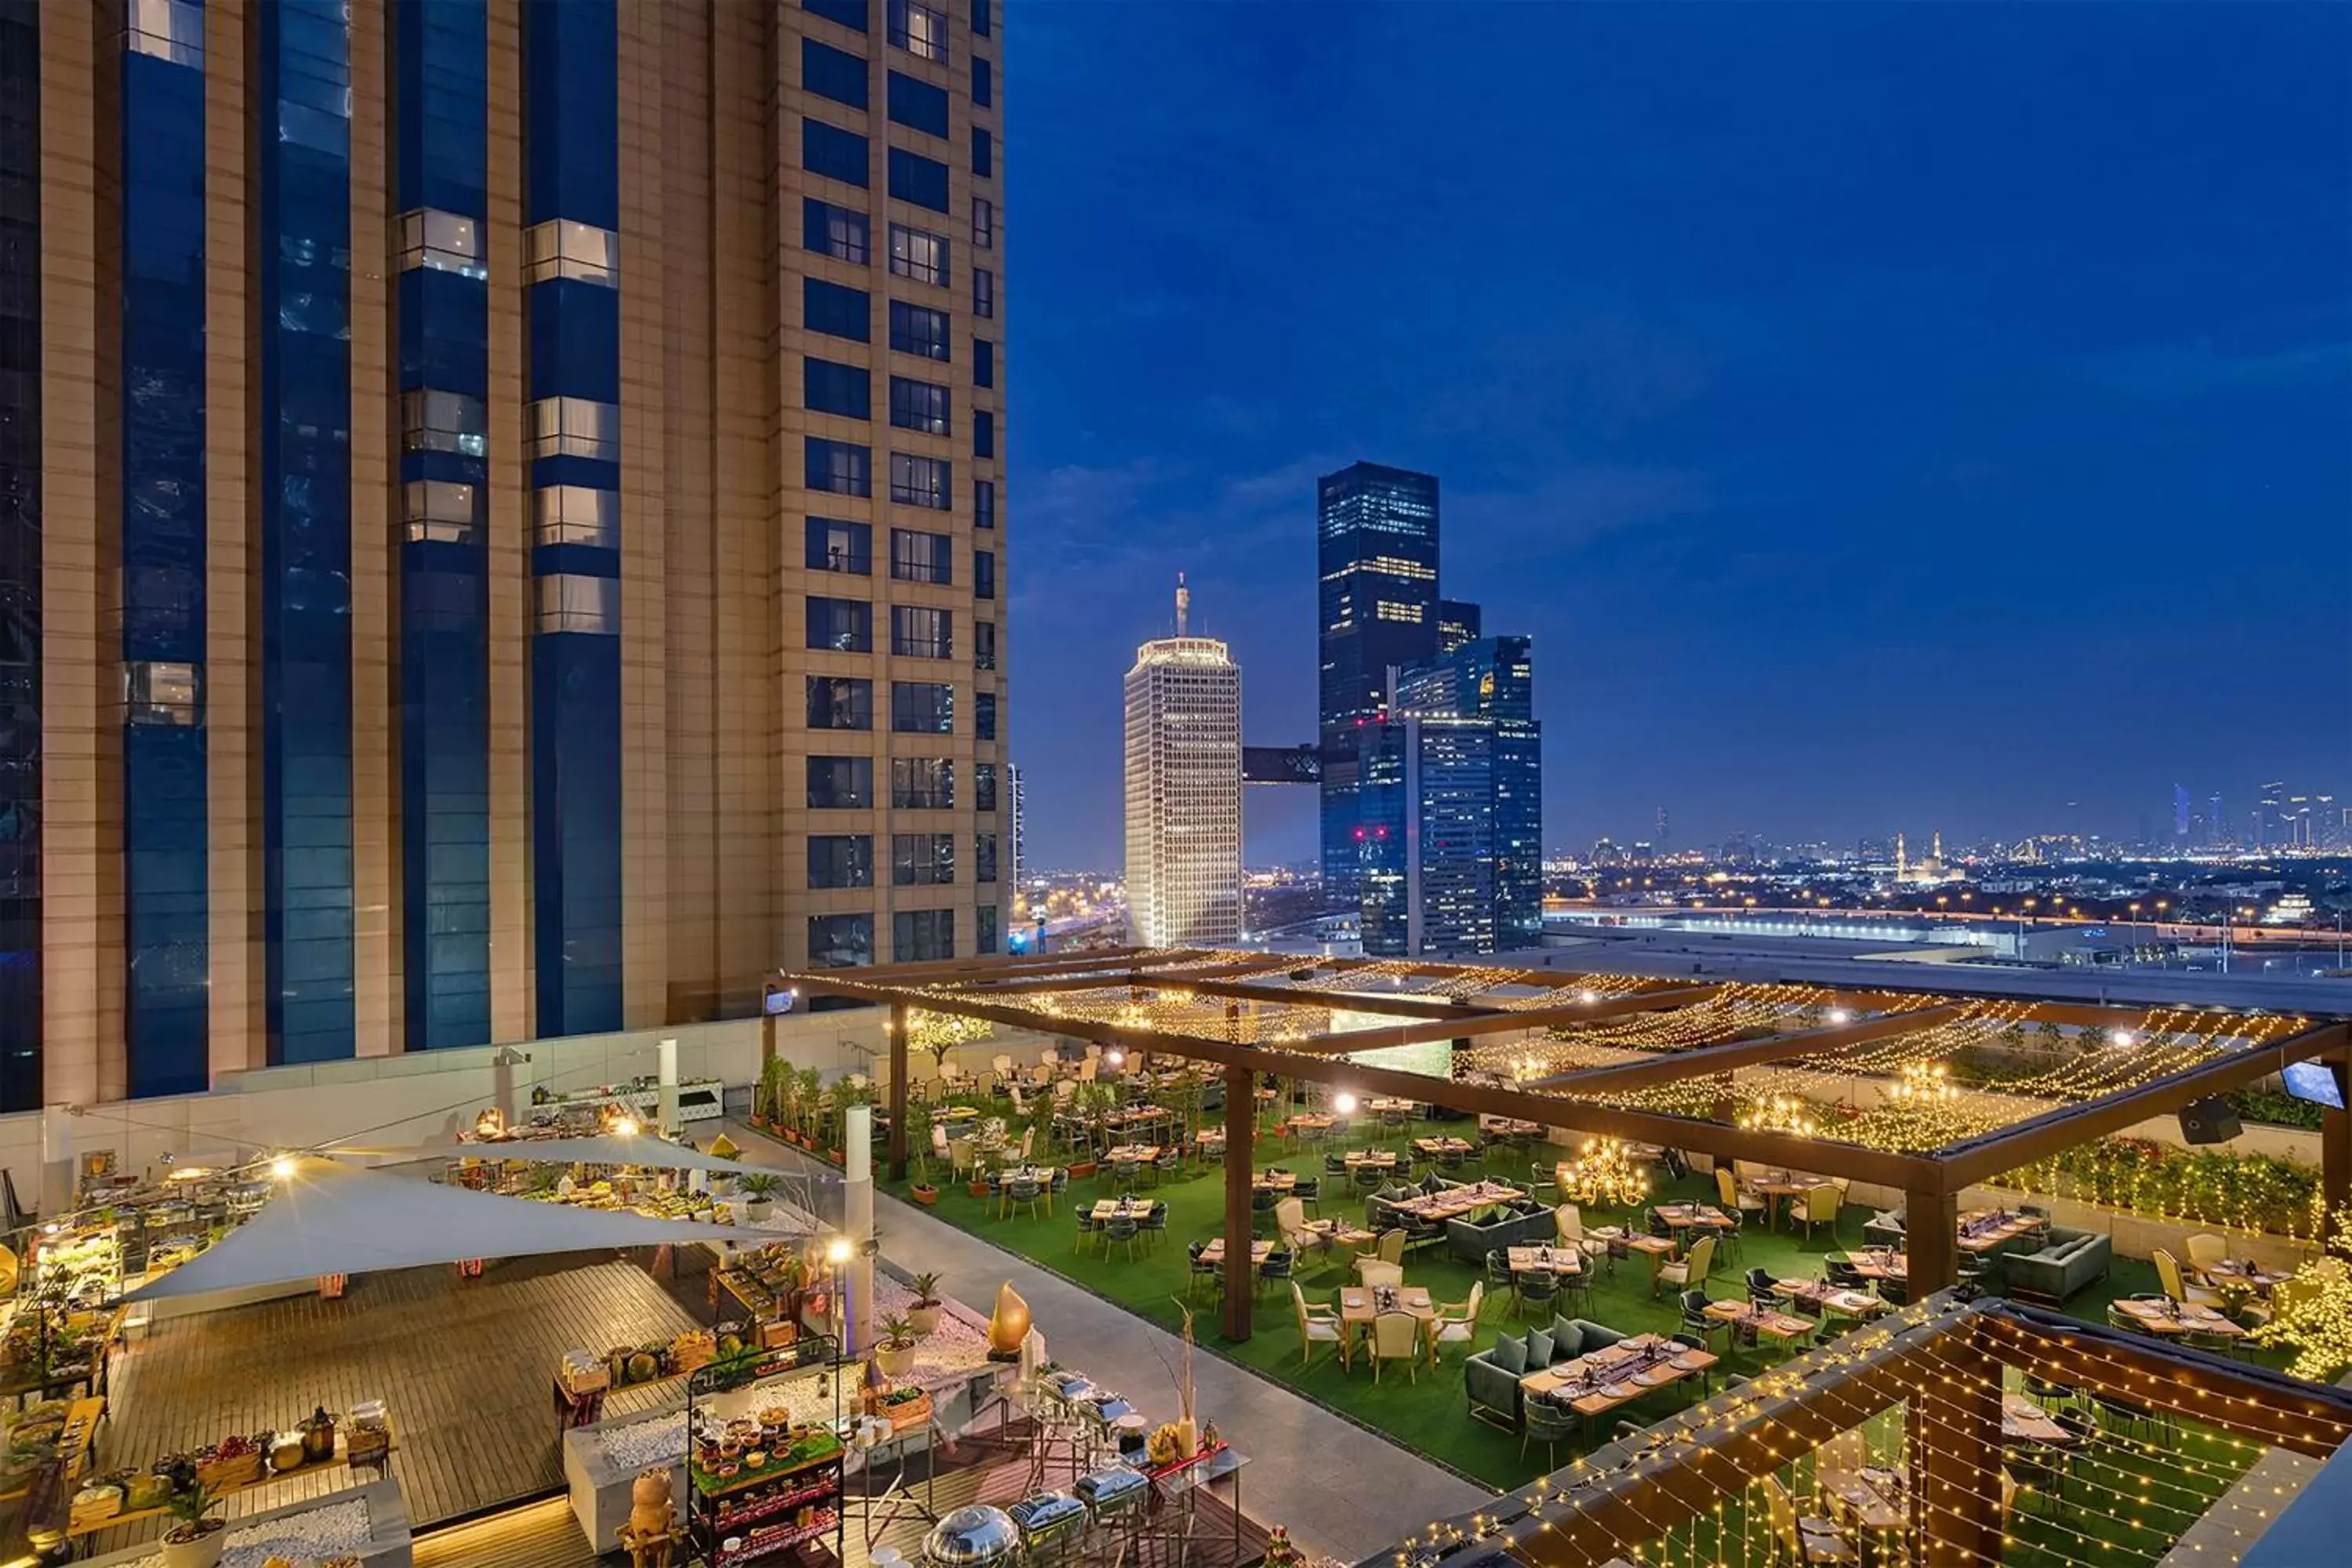 Restaurant/places to eat in Conrad Dubai